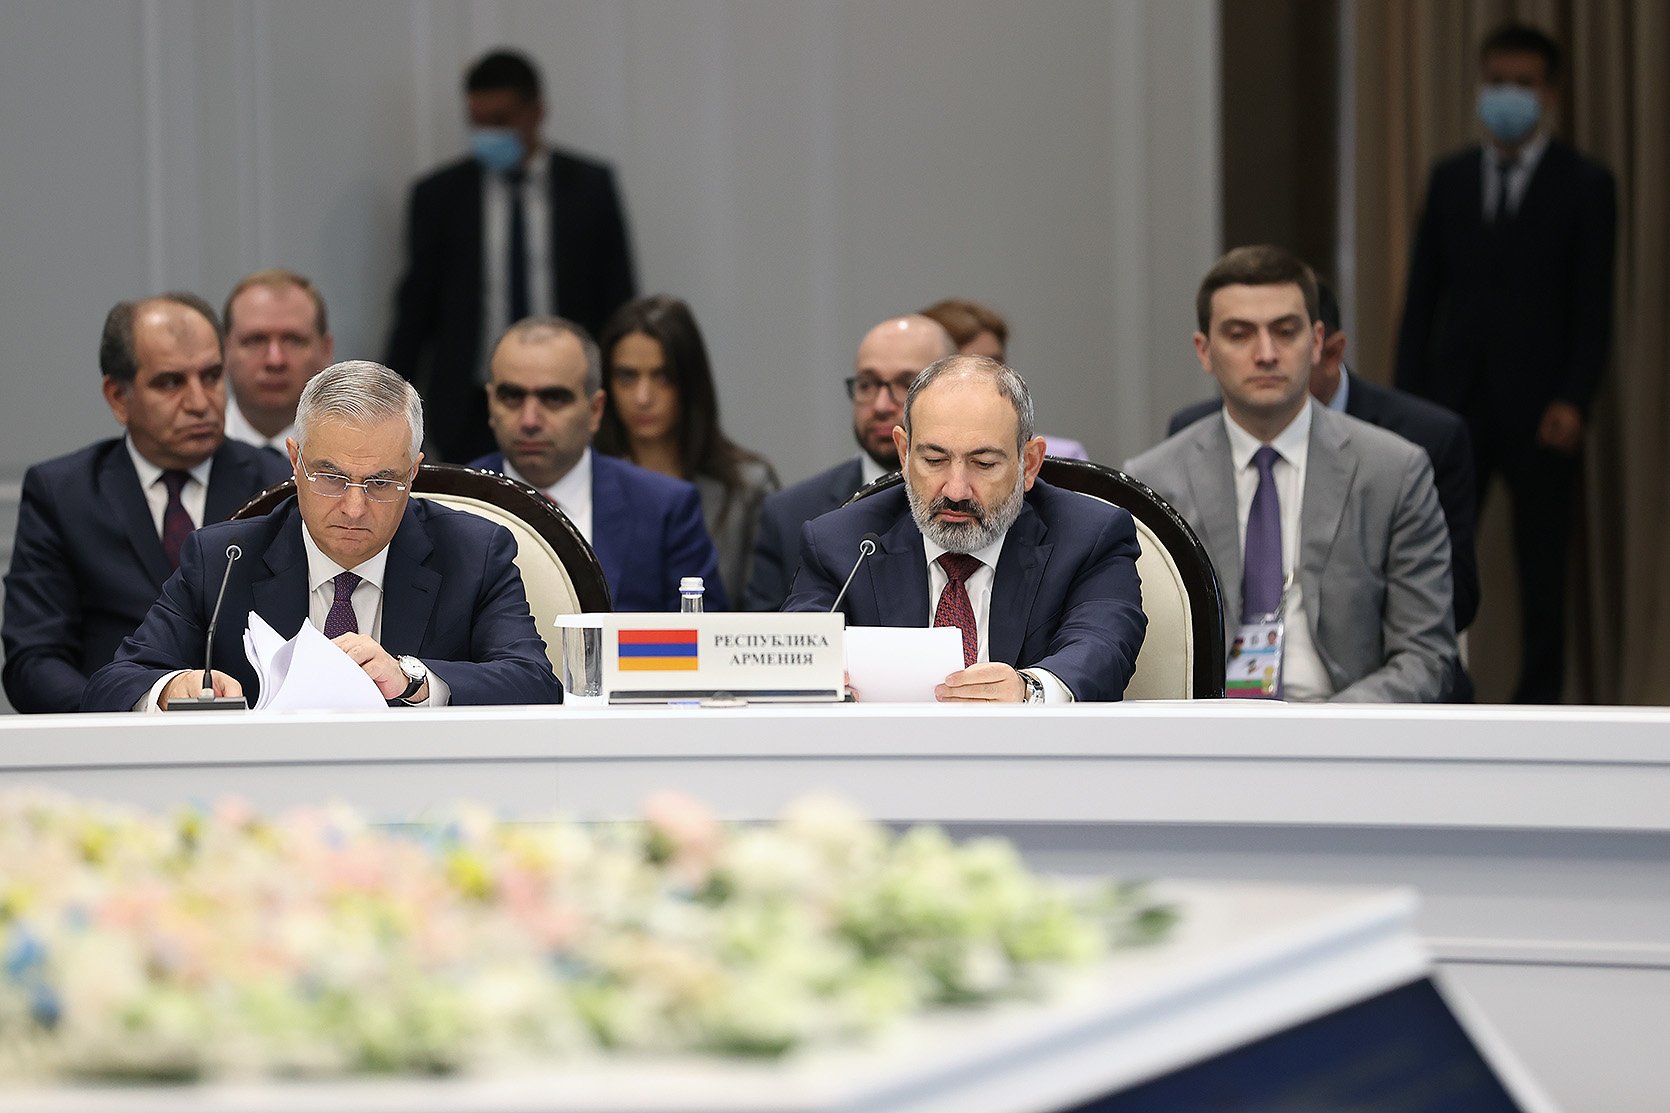 Եվրասիական միջկառավարական խորհրդի հաջորդ նիստը կանցկացվի այս տարվա հոկտեմբերին, Երևանում